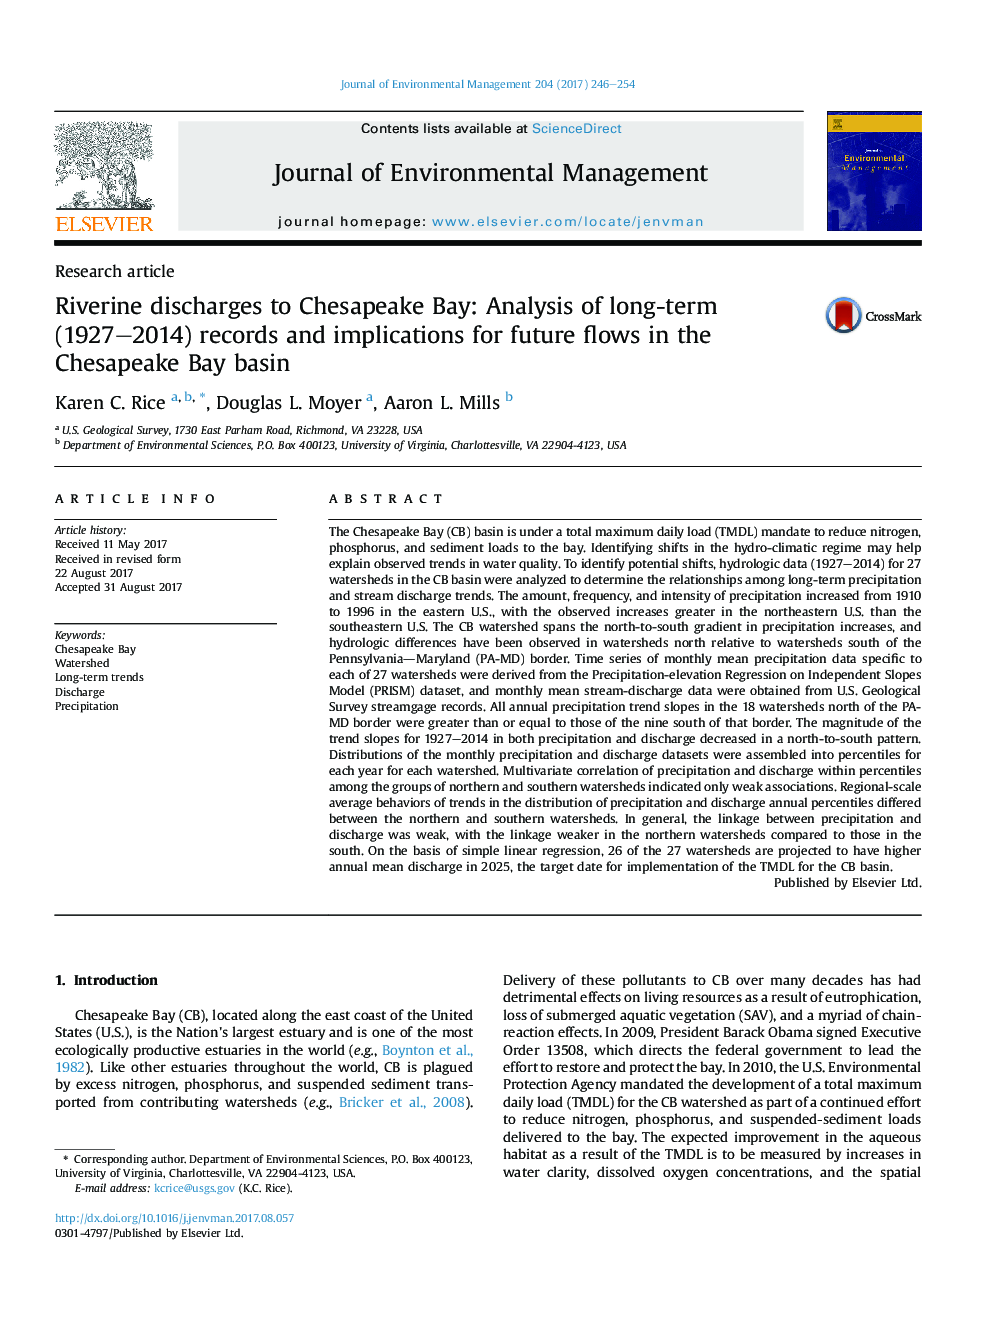 تخلیه رودخانه به خلیج چیسپیک: تجزیه و تحلیل پرونده های طولانی مدت (1927-2014) و پیامدهای جریان های آینده در حوزه دریای چزاپیک 